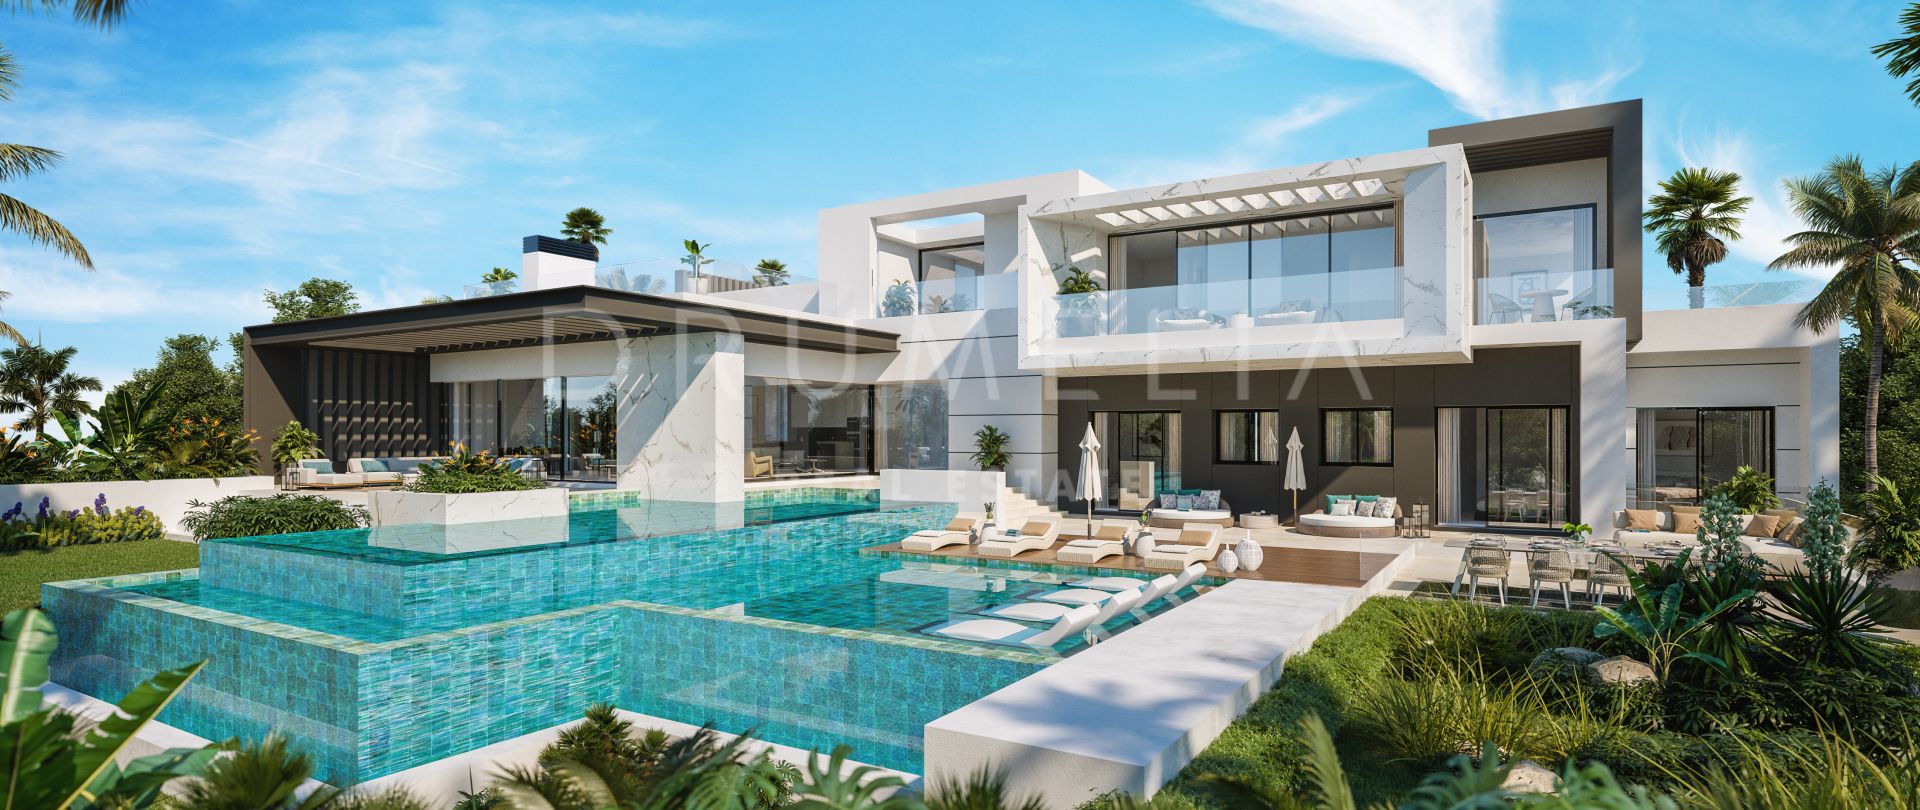 Adembenemende luxe villa in hedendaagse stijl met uitzicht op zee in het prachtige El Paraiso, Benahavis